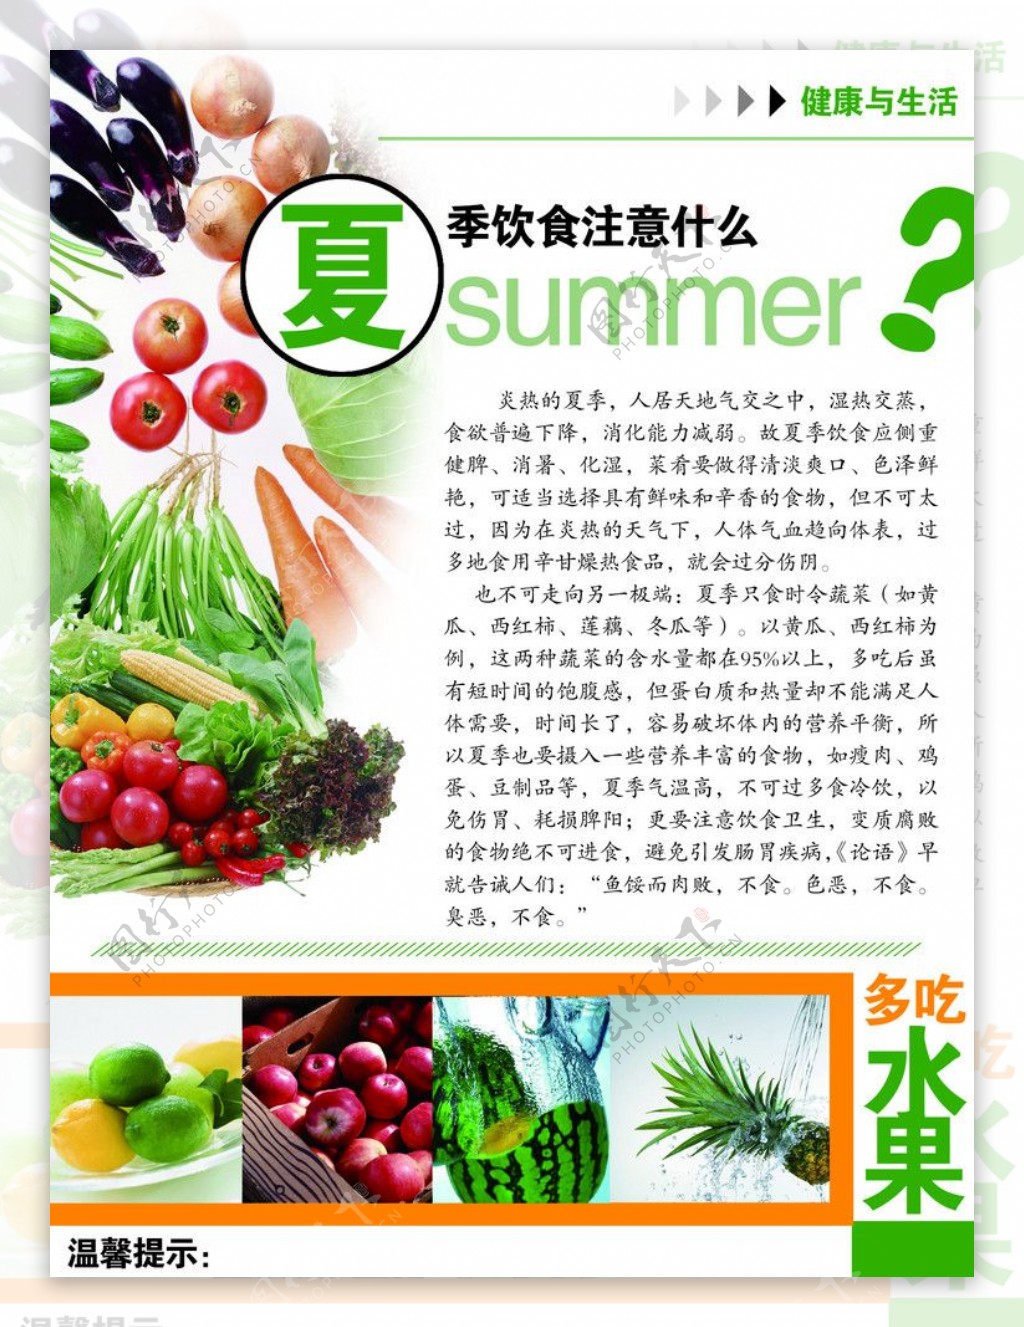 夏天，最馋这6道凉拌菜，简单还好吃，比拍黄瓜强多了，要收藏